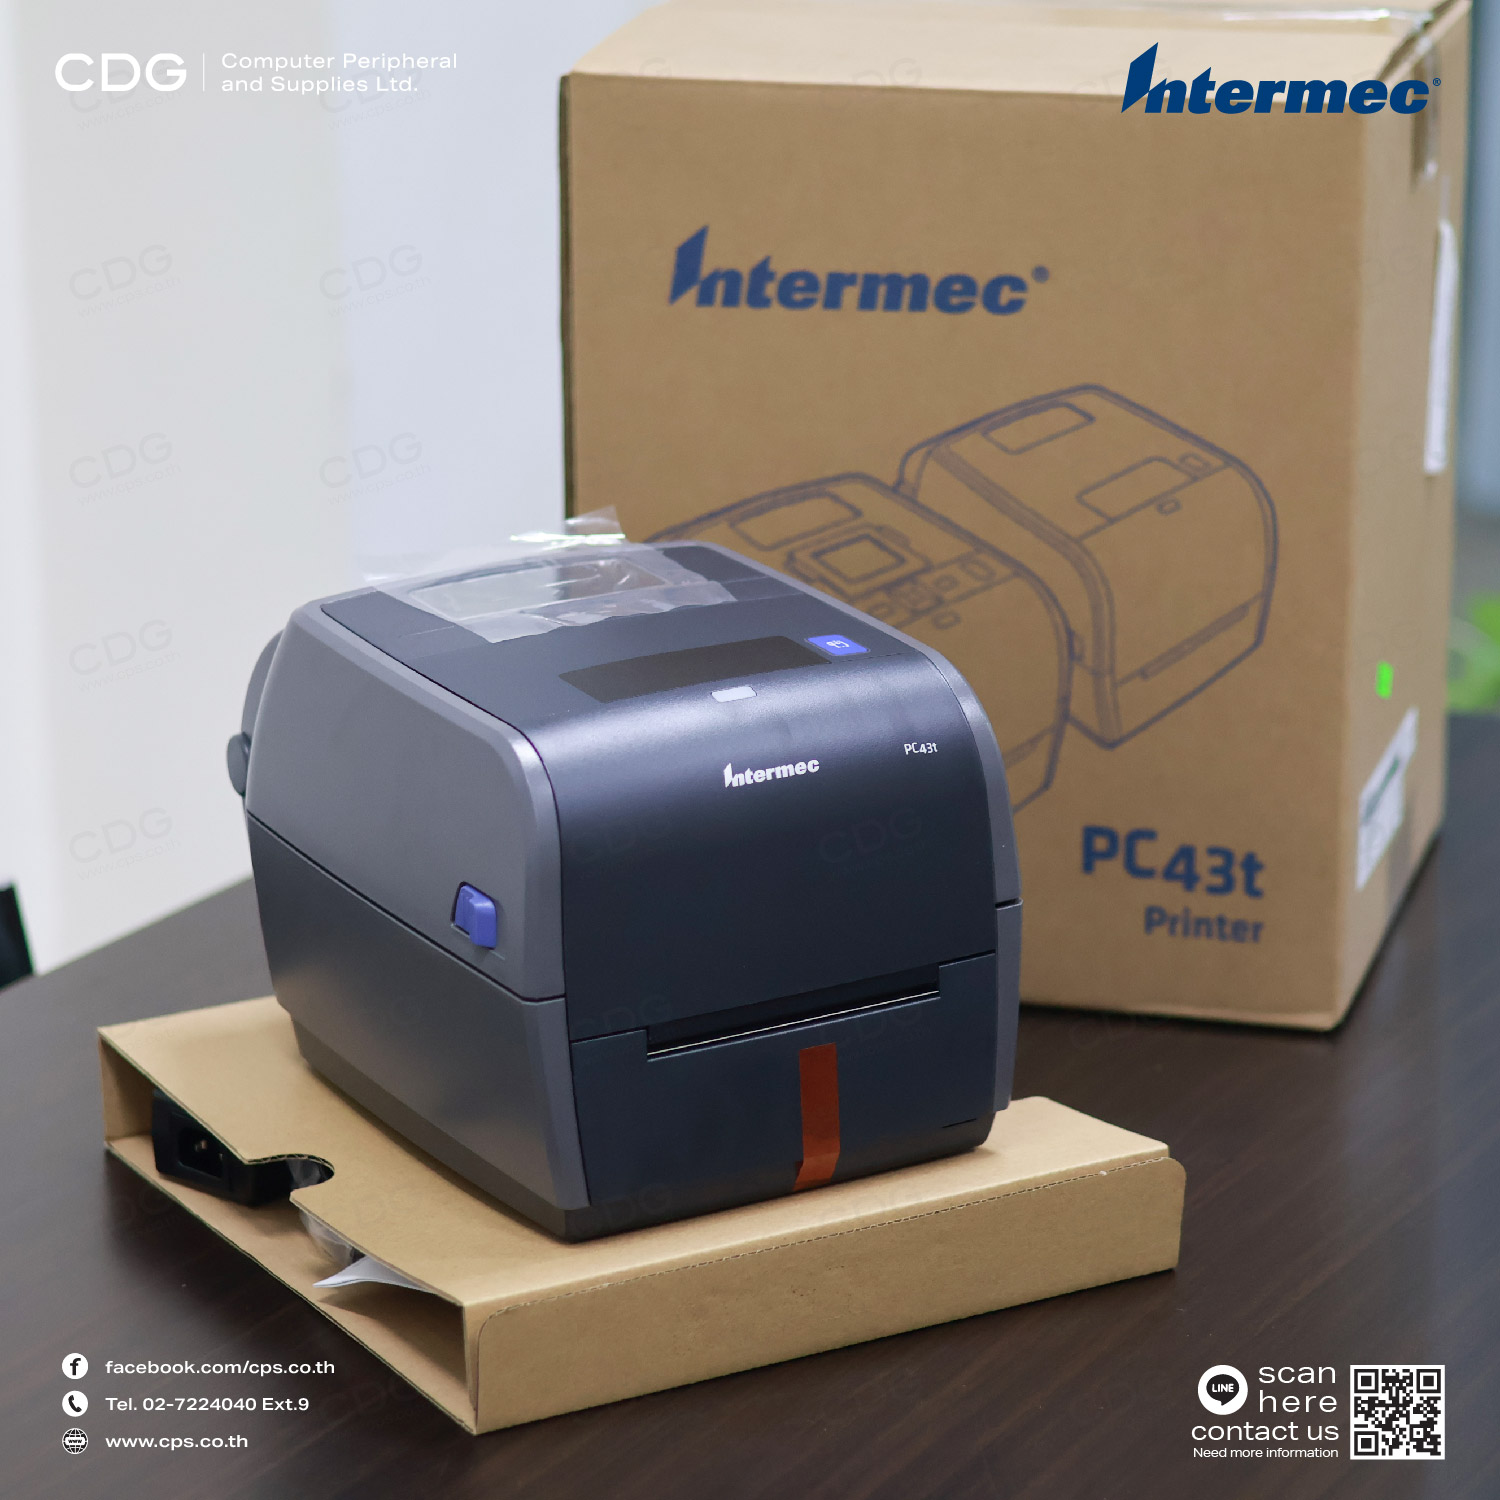 Intermec PC43T